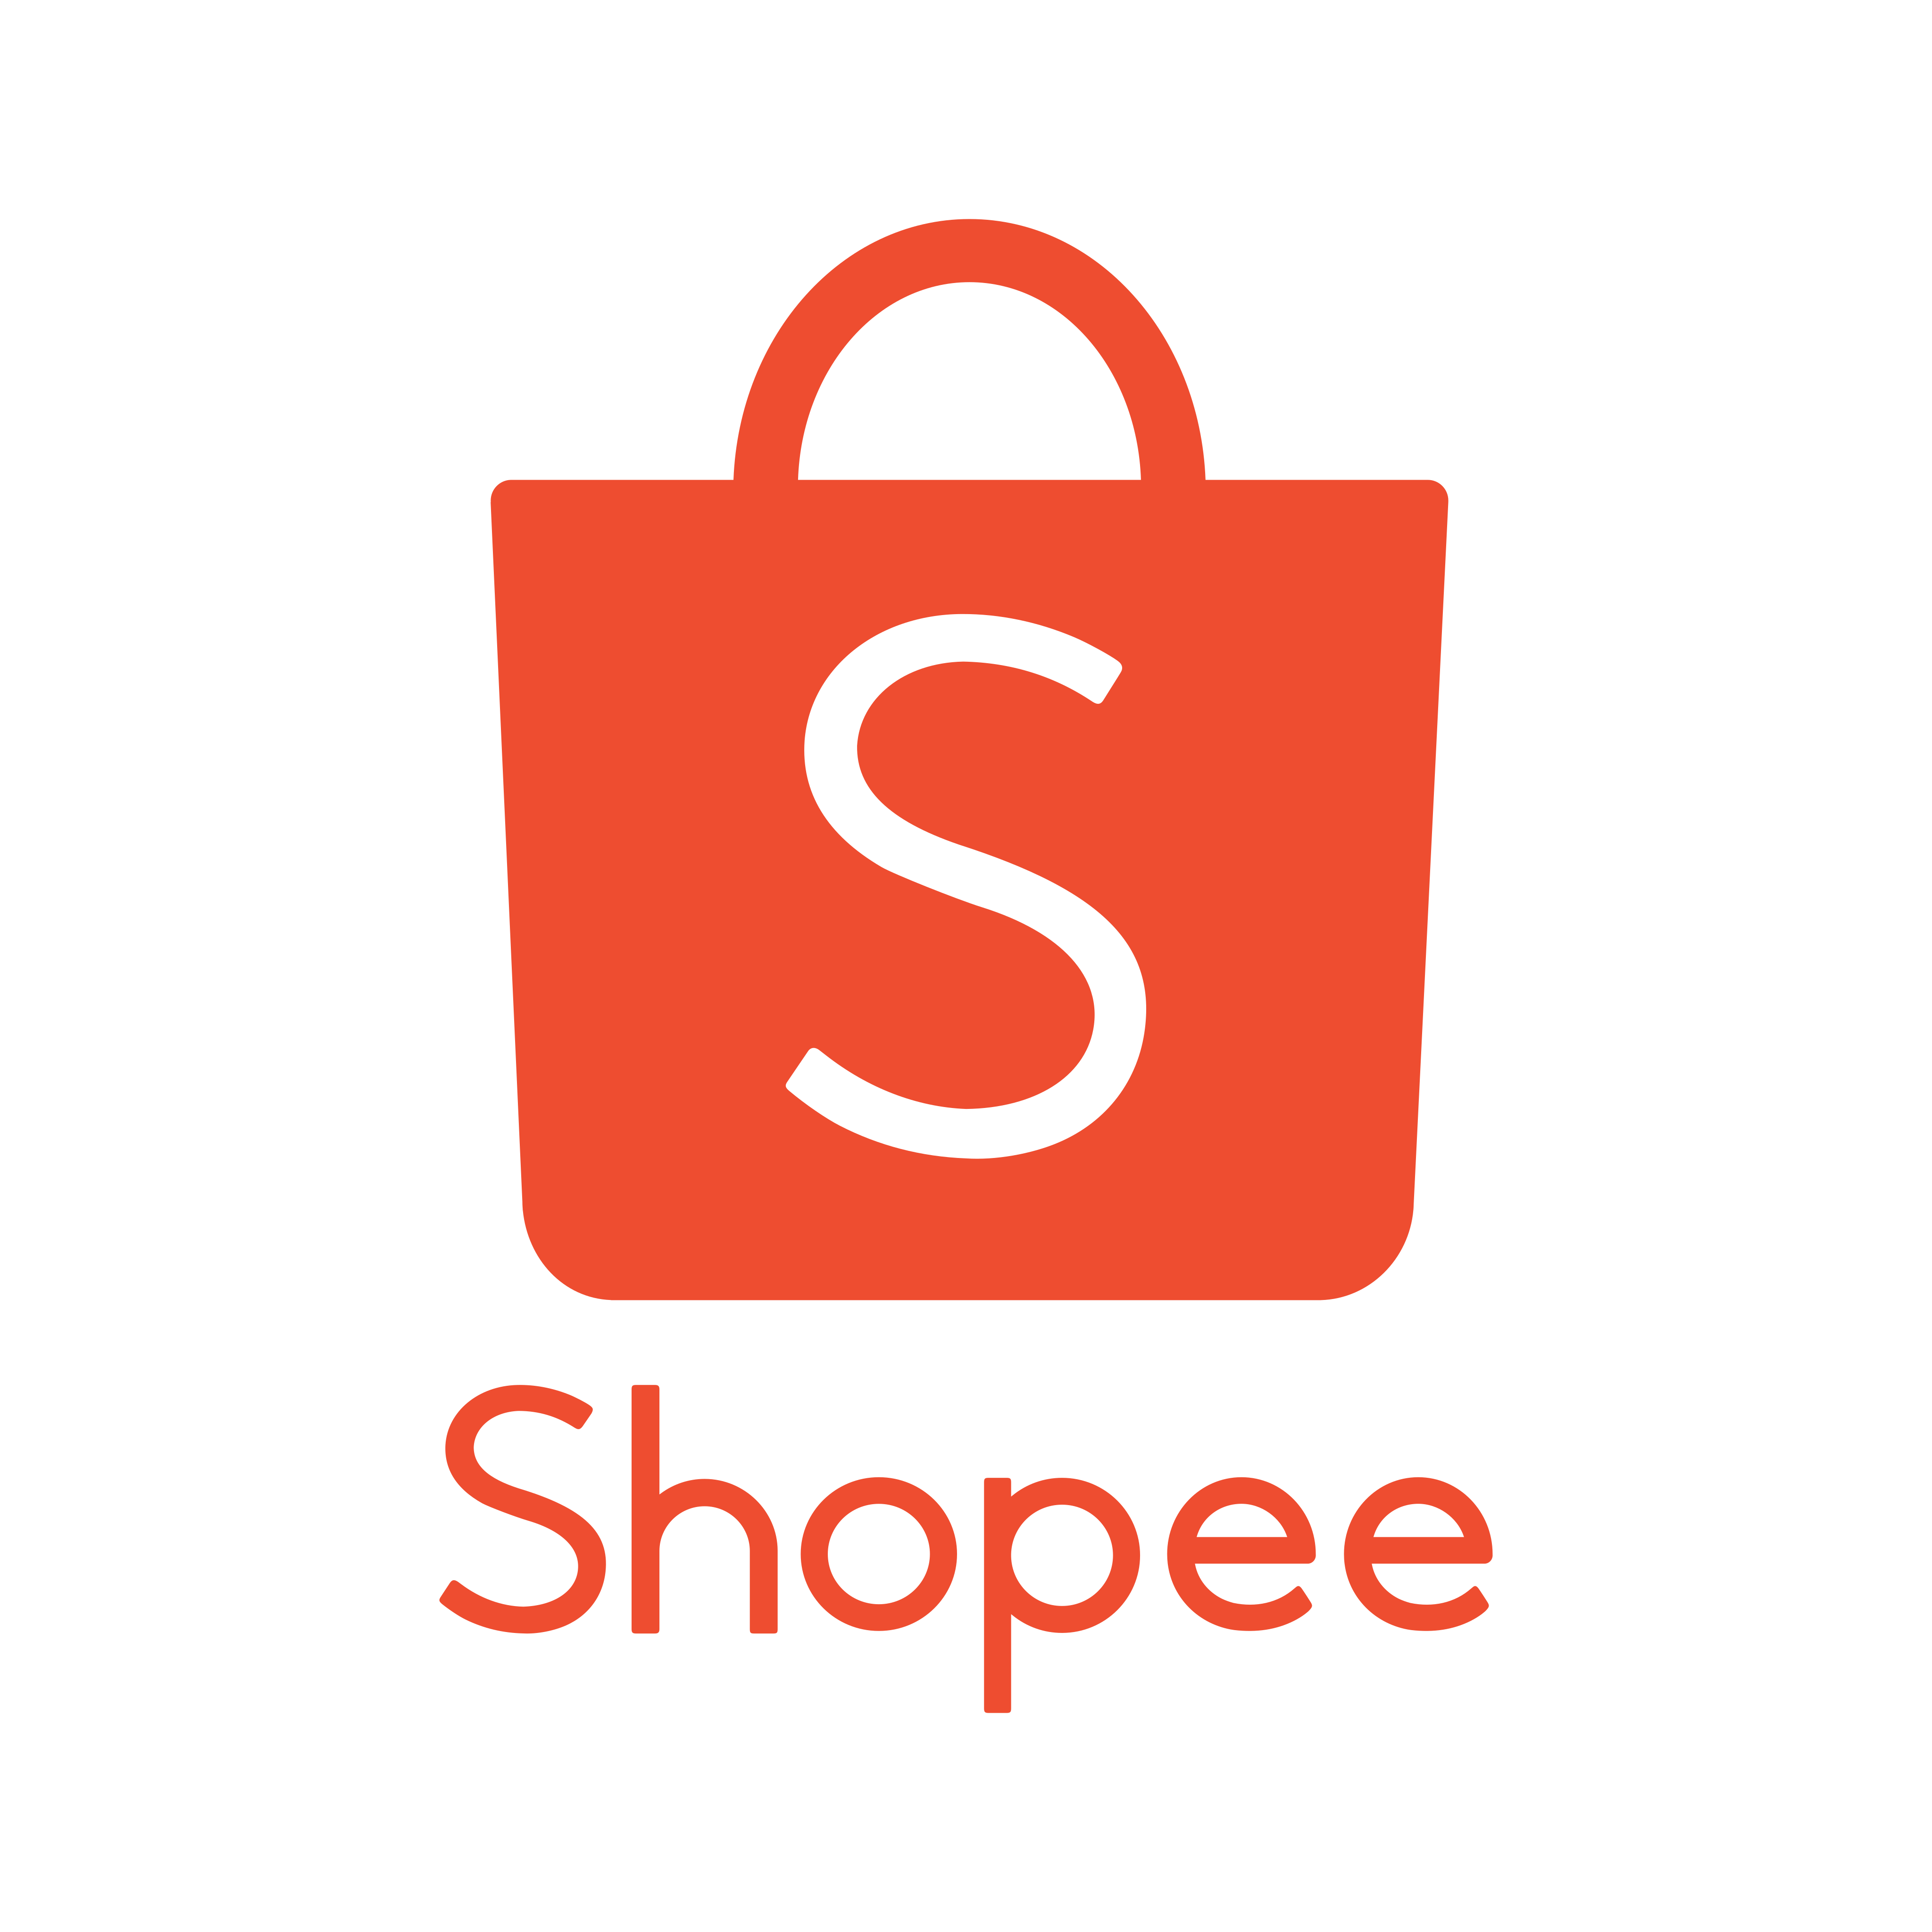 shopee logo 0 - Shopee Logo